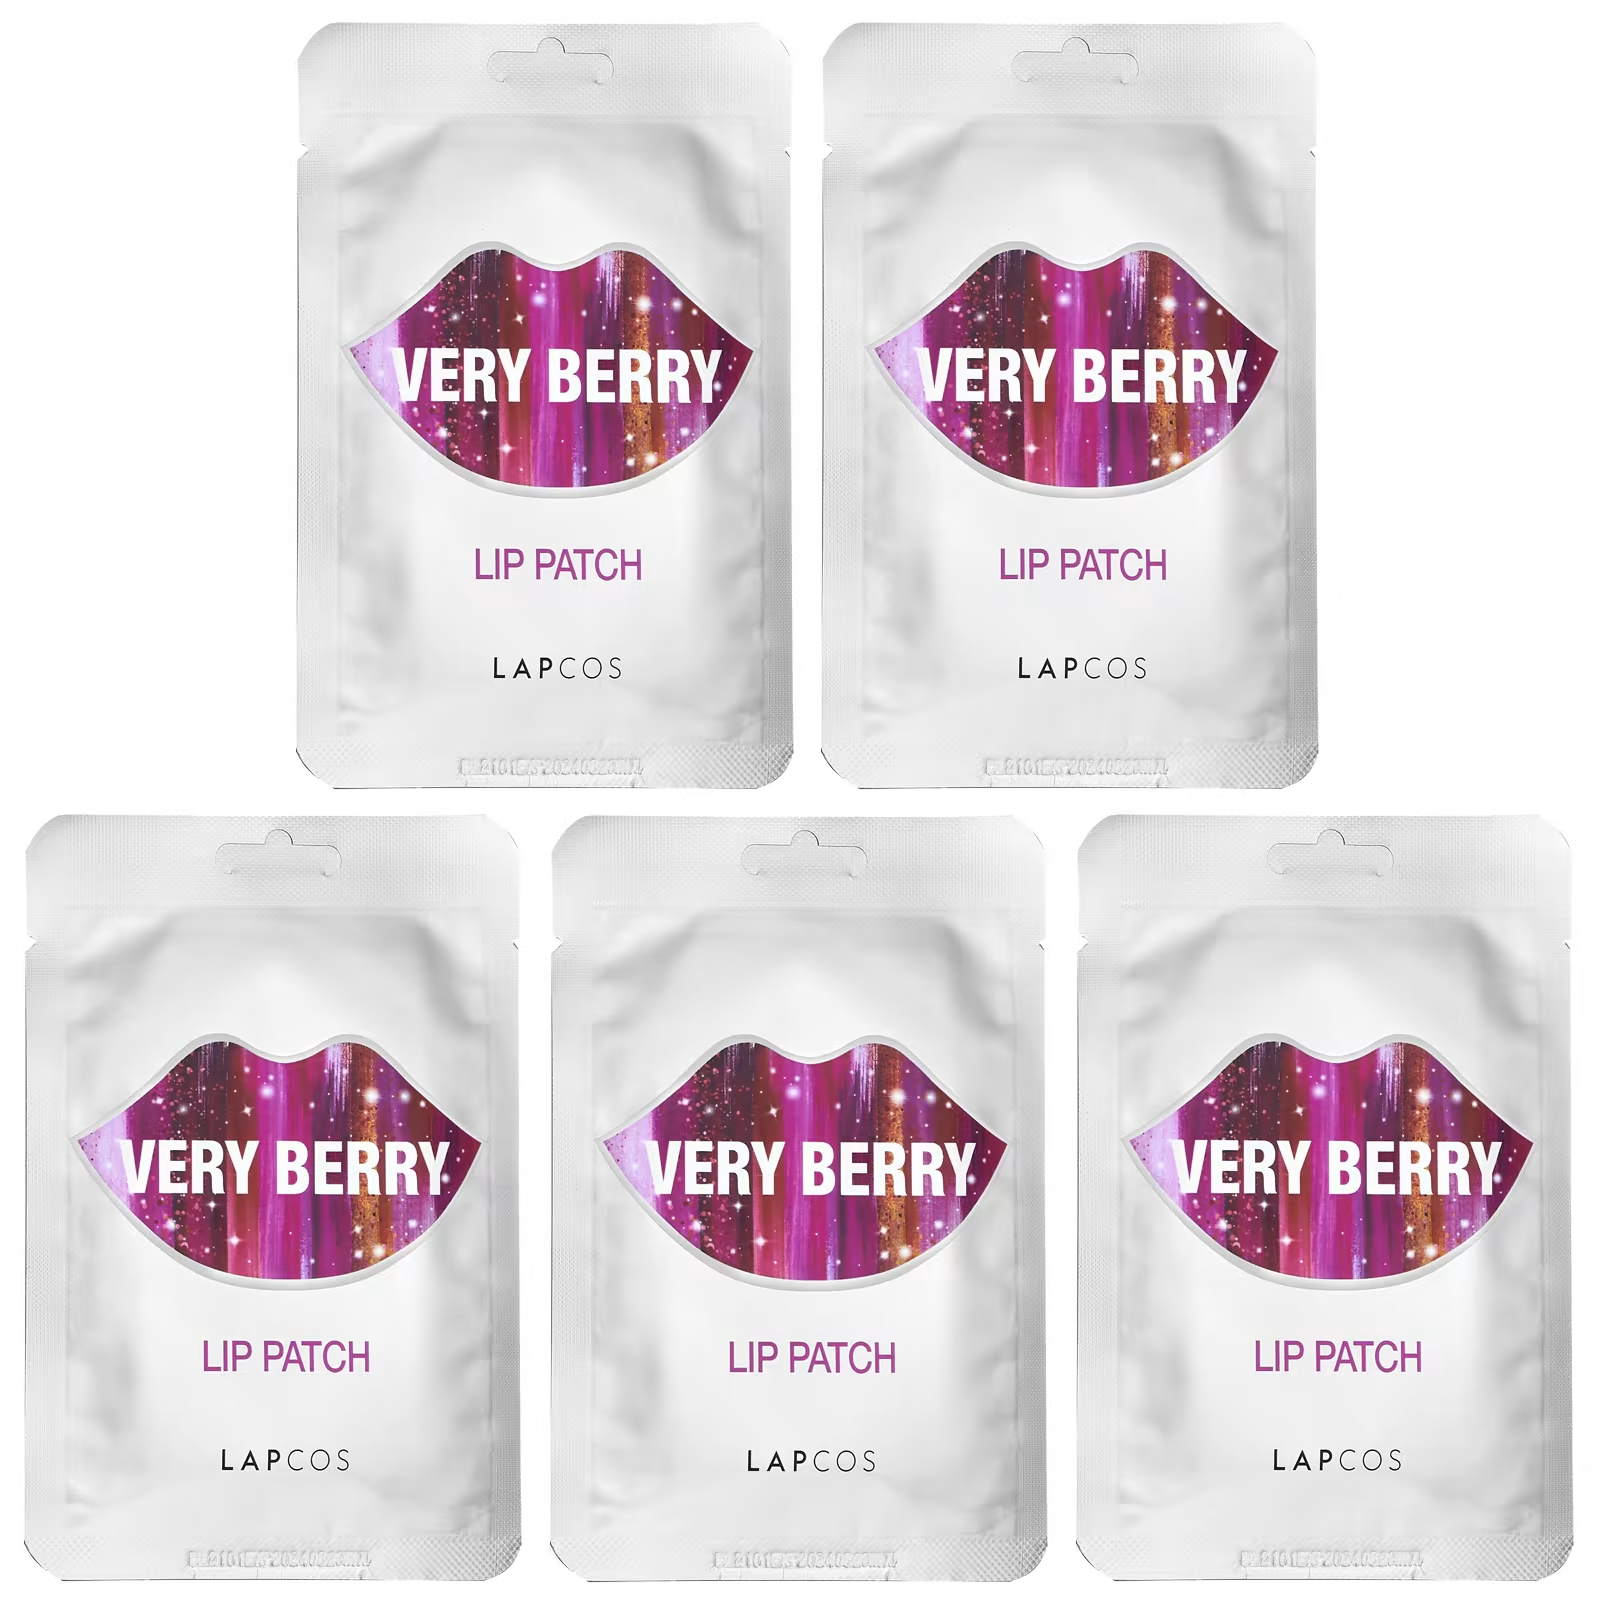 Lapcos Lip Patch Very Berry 5 патчей по 0,1 унции каждый цена и фото